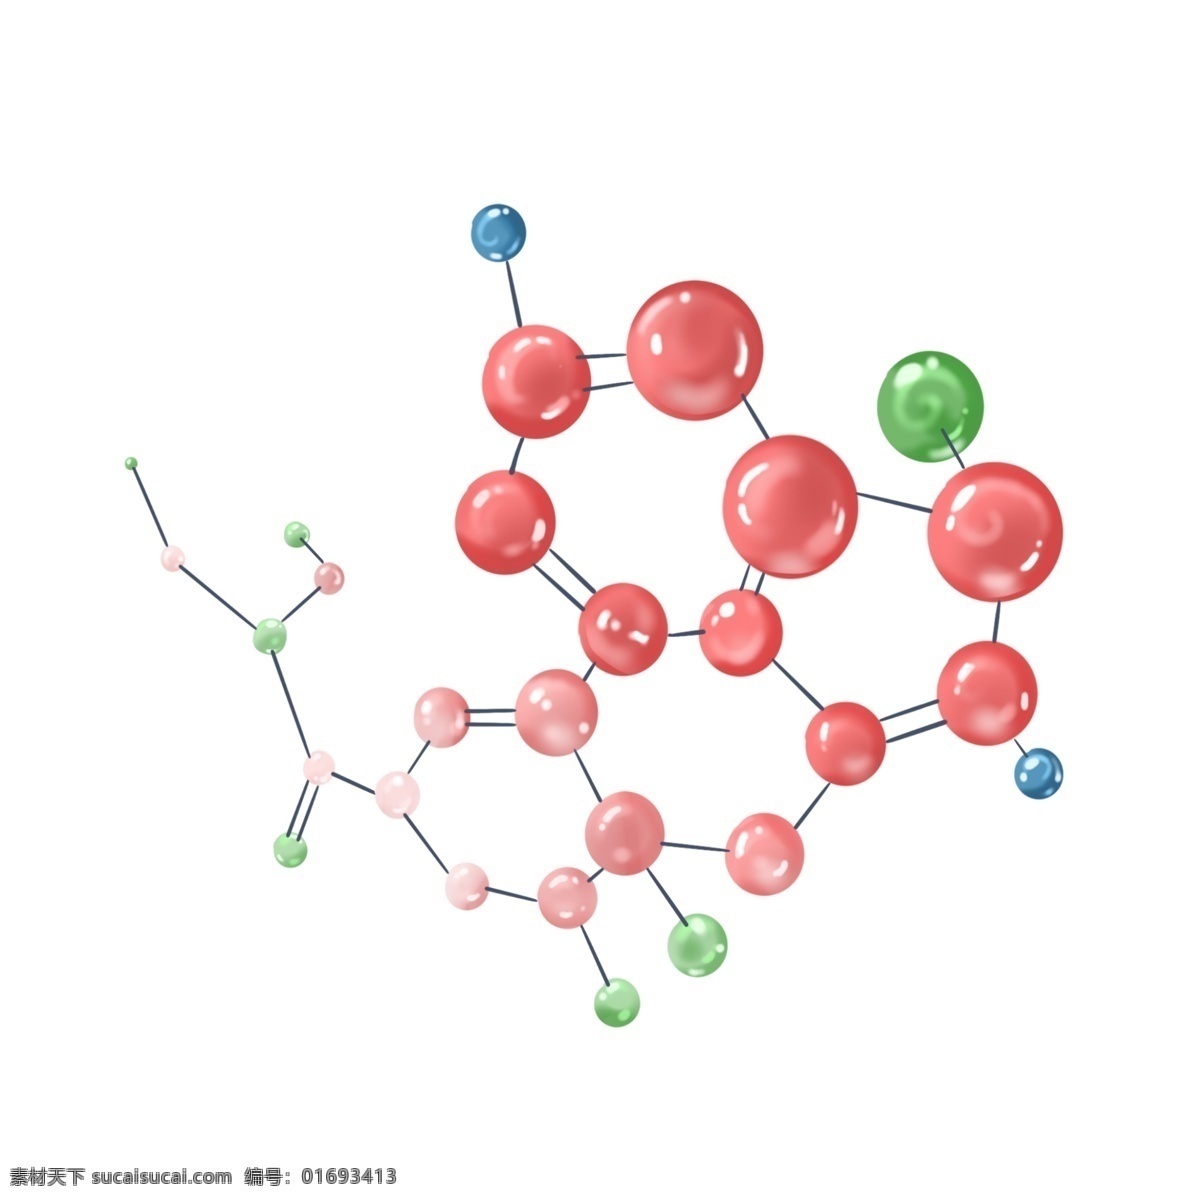 创意 化学 分子式 插画 精美的分子式 红色分子式 化学公式 卡通公式插画 创意分子式 化学分子式